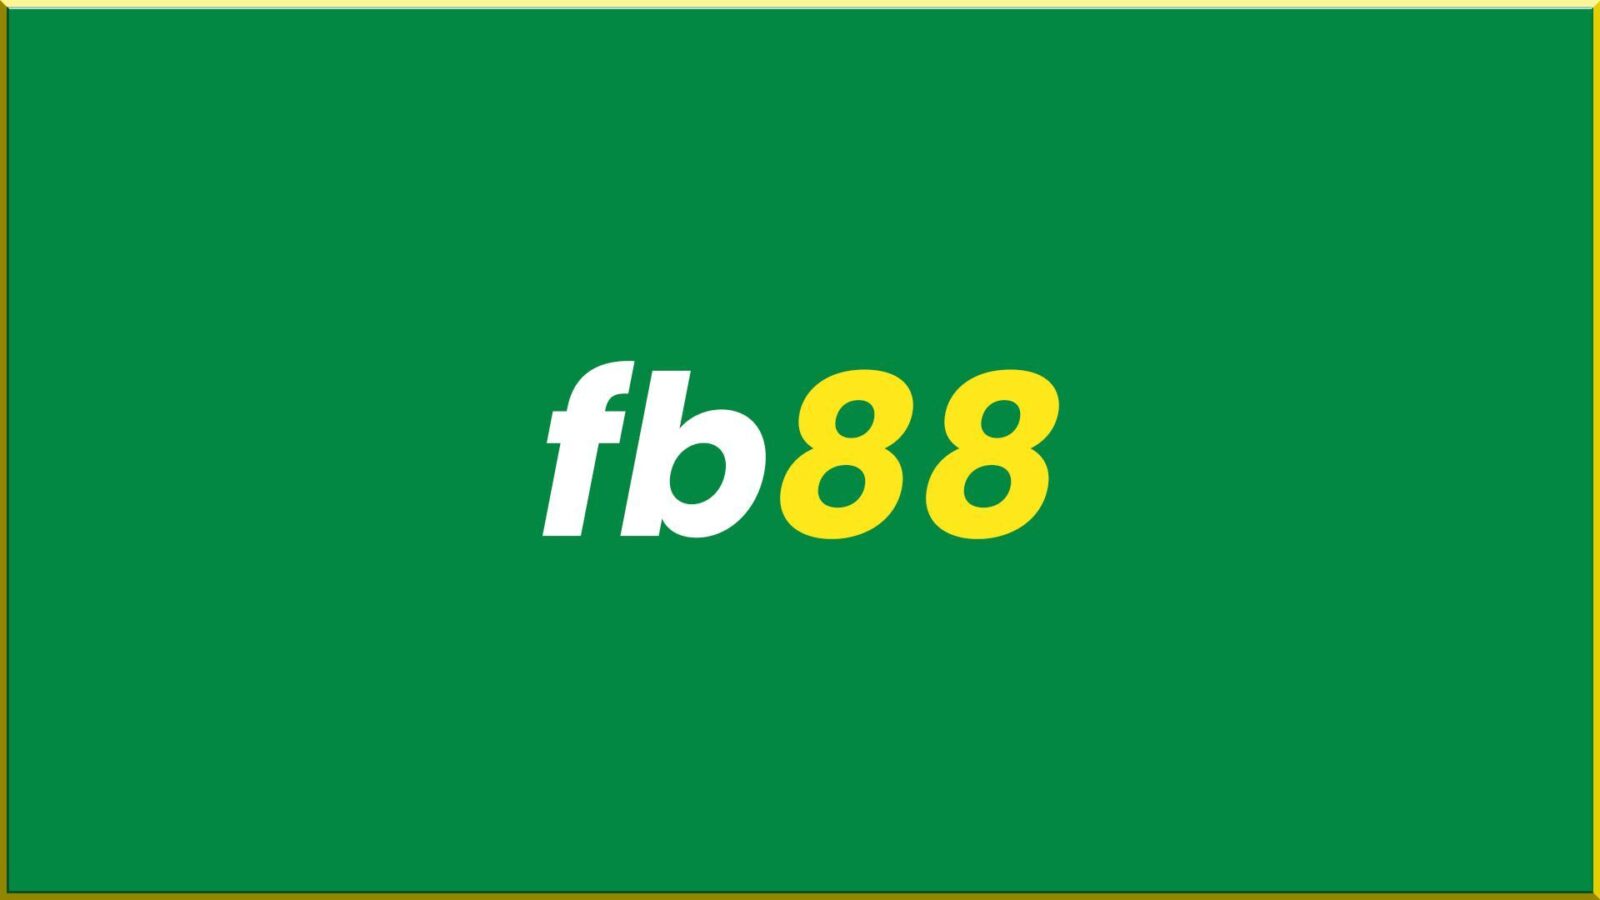 FB88 - Nhà cái được cấp phép hoạt động hợp pháp